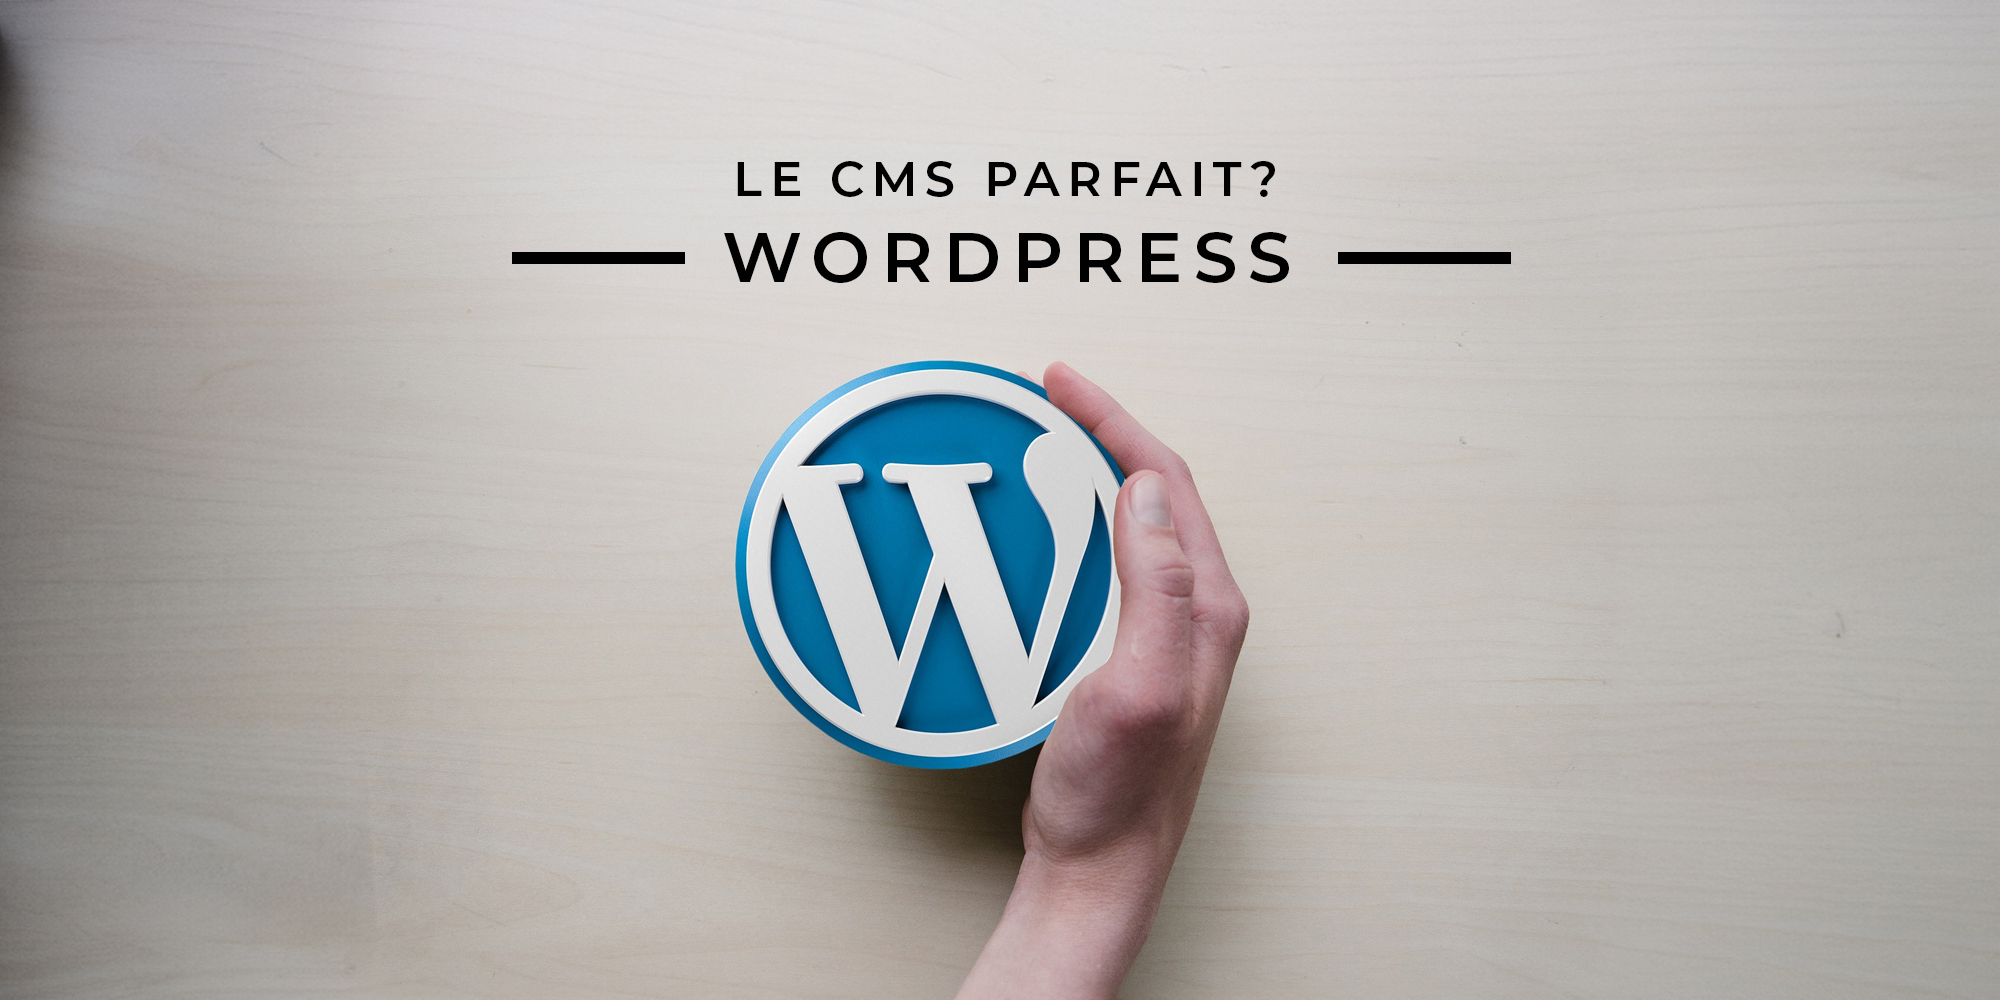 WordPress, le CMS parfait pour créer votre site internet